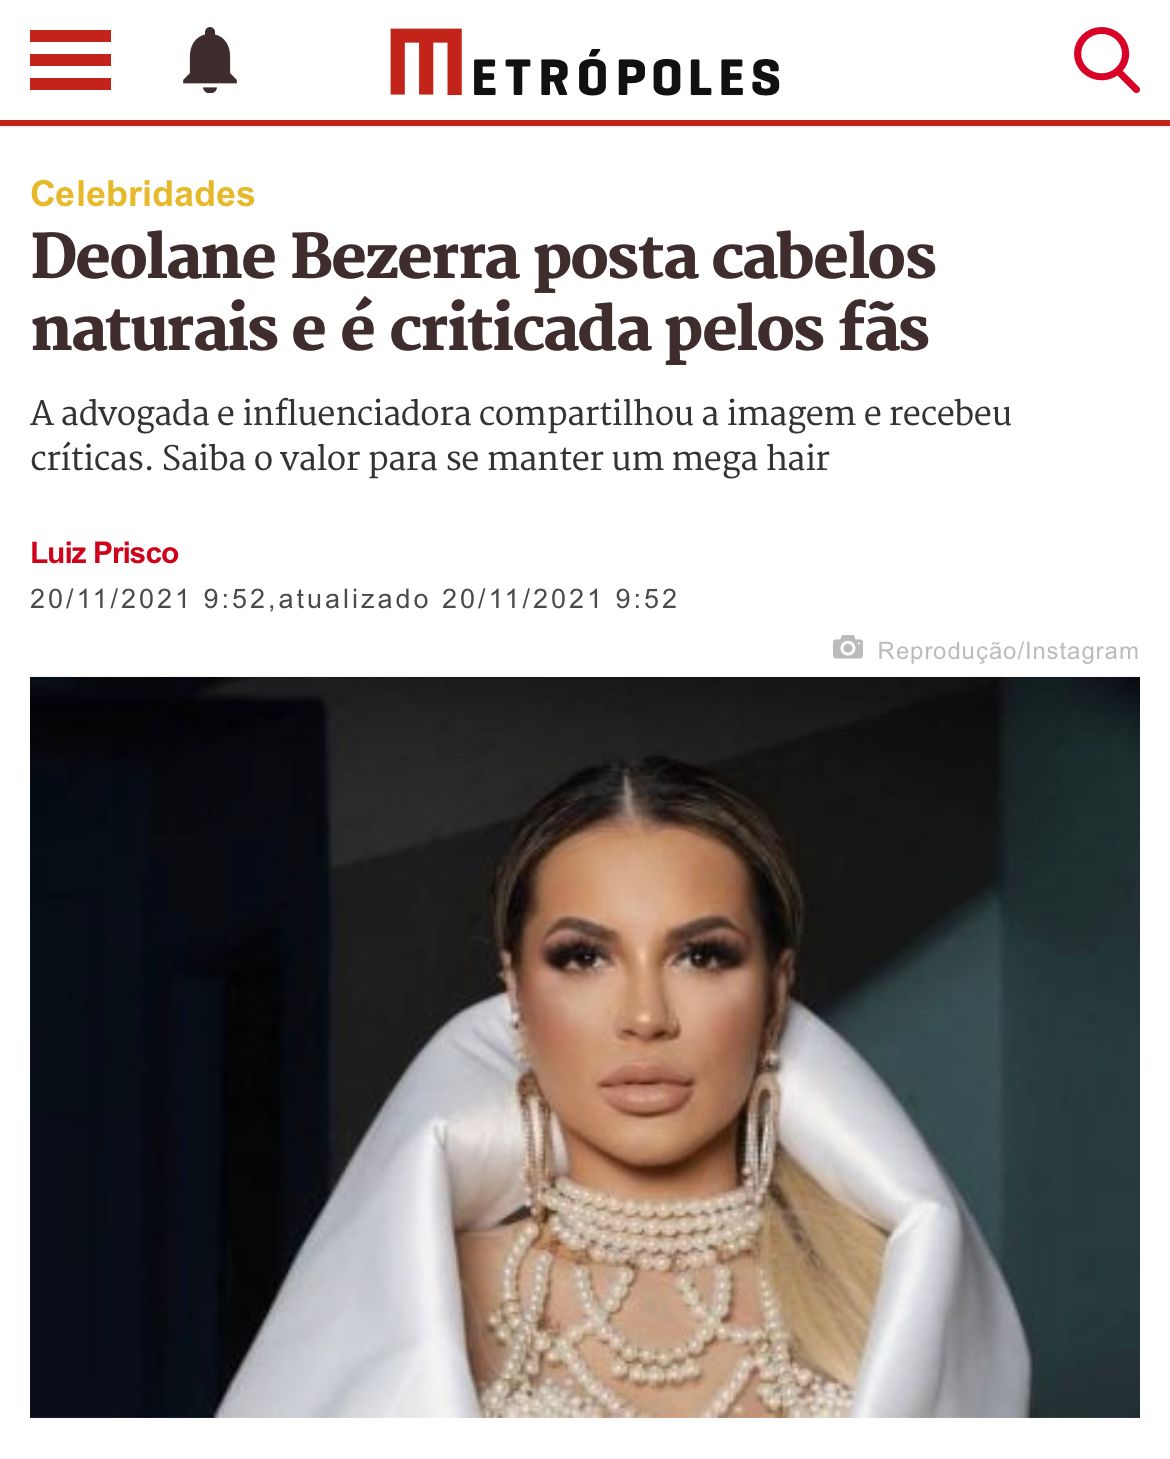 Deolane Bezerra